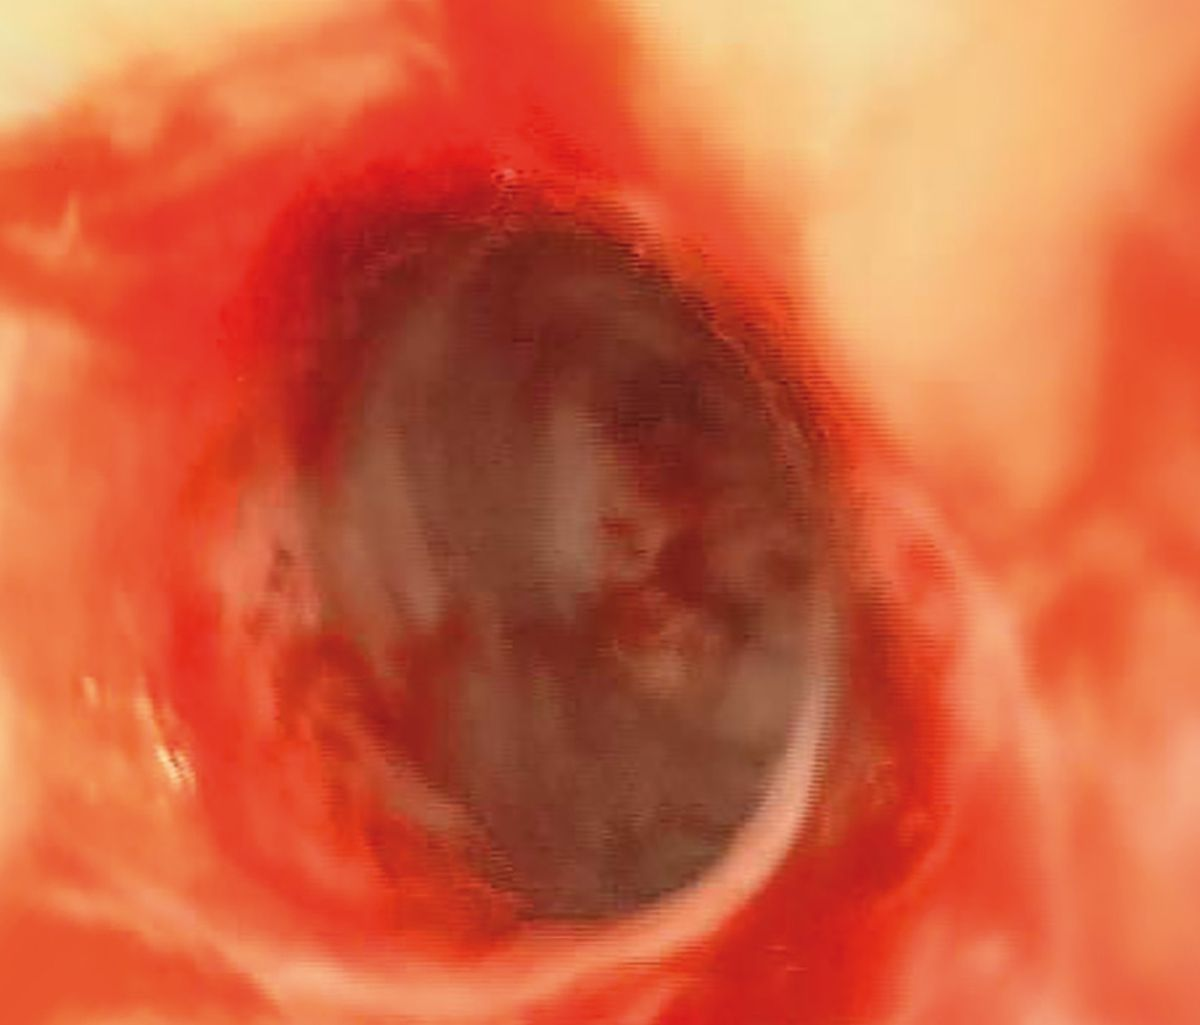 La valutazione endoscopica del Caso clinico 2 dopo la dilatazione ha rivelato la presenza di una grave ulcerazione multifocale.